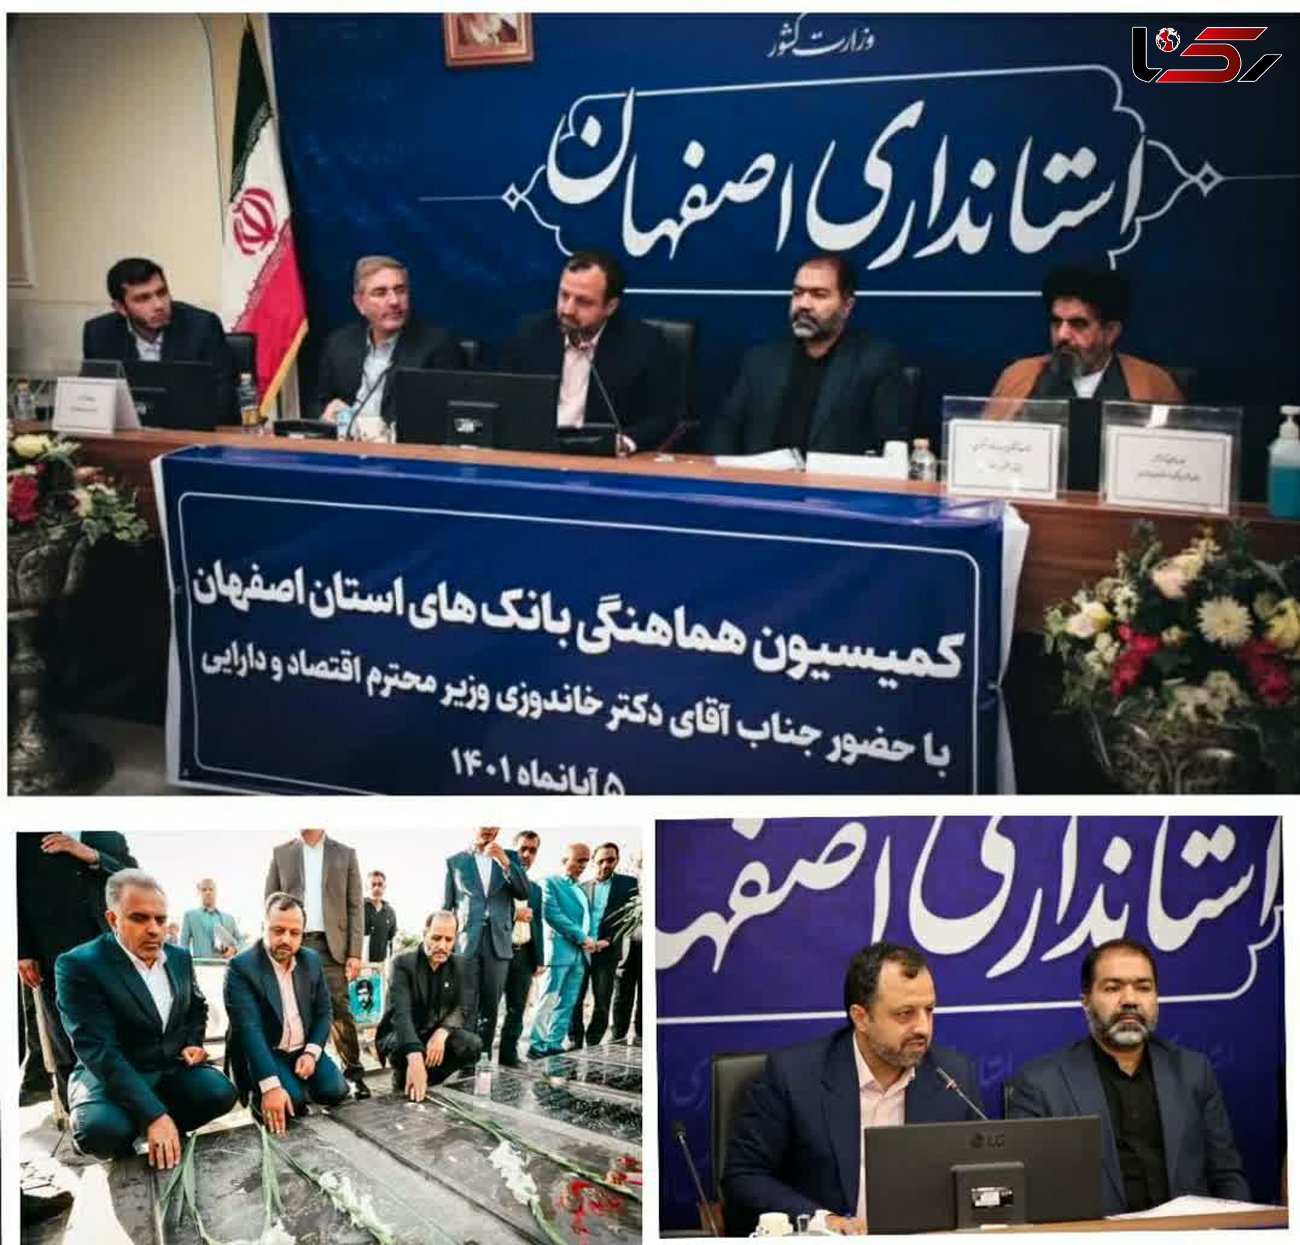 برگزاری جلسه کمیسیون هماهنگی بانک های استان اصفهان با حضور وزیر امور اقتصادی و دارایی/ صنعت اصفهان در کشور وضعیت منحصر به فردی دارد